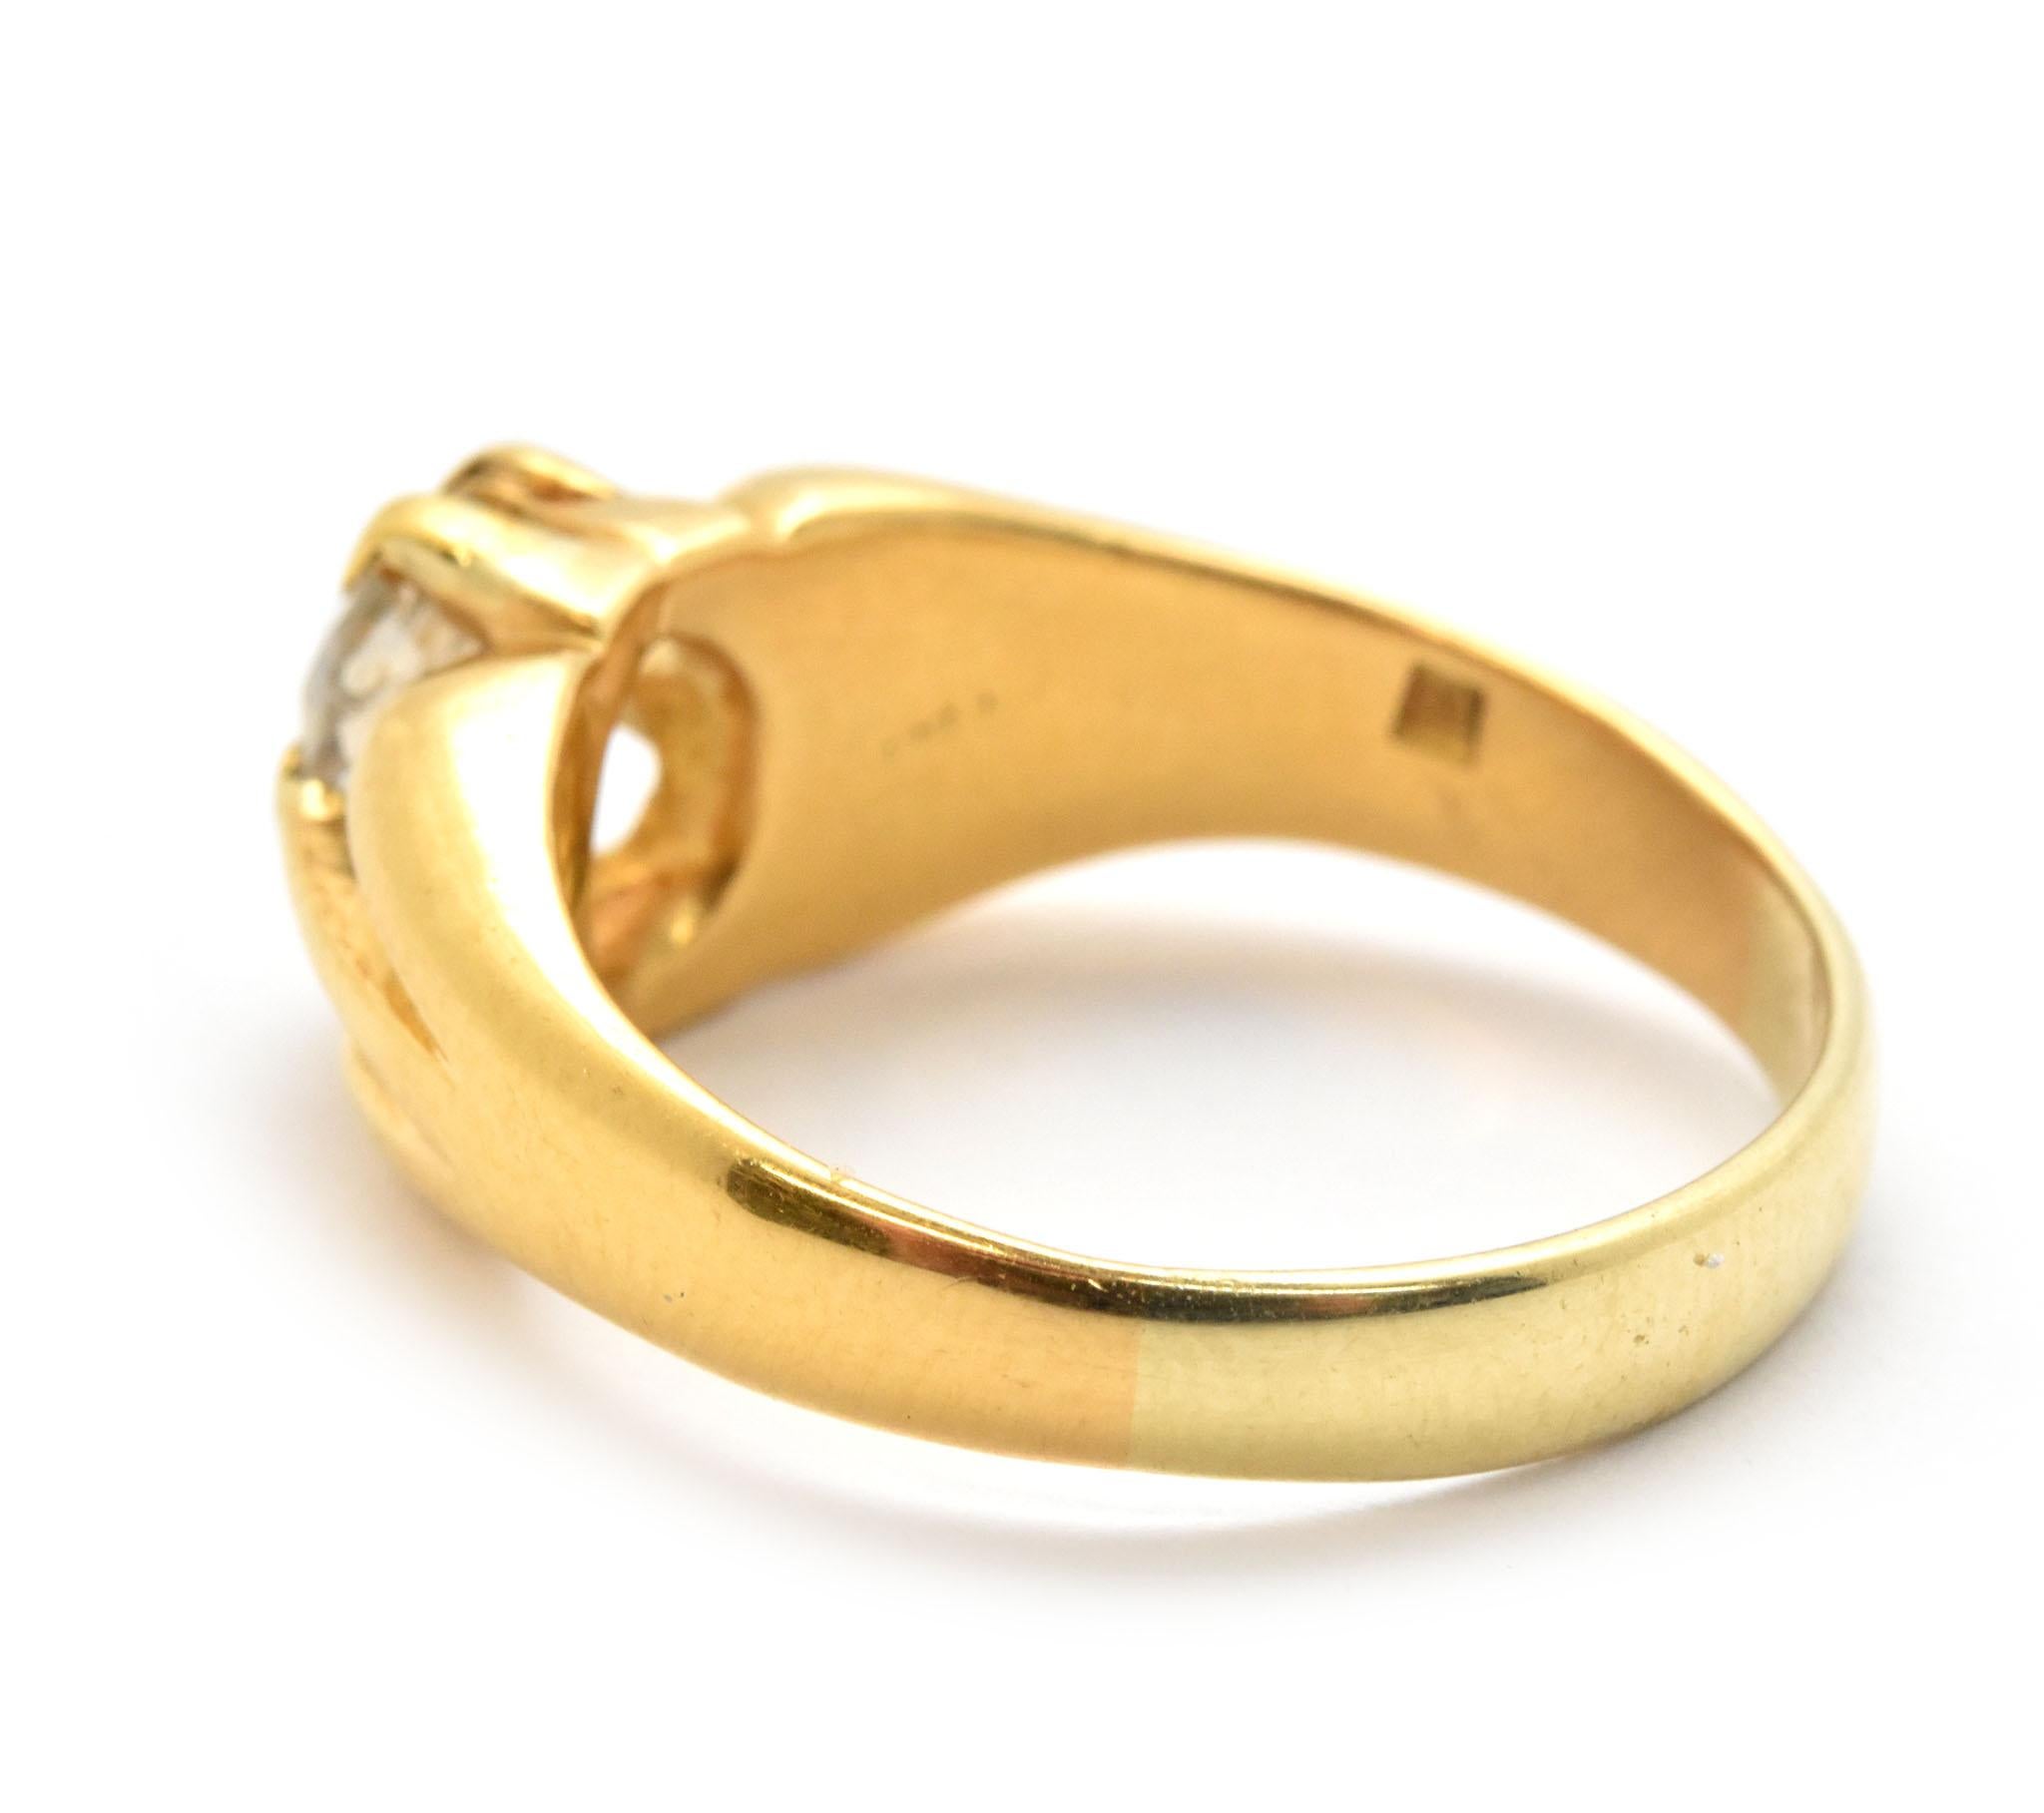 21 carat gold ring